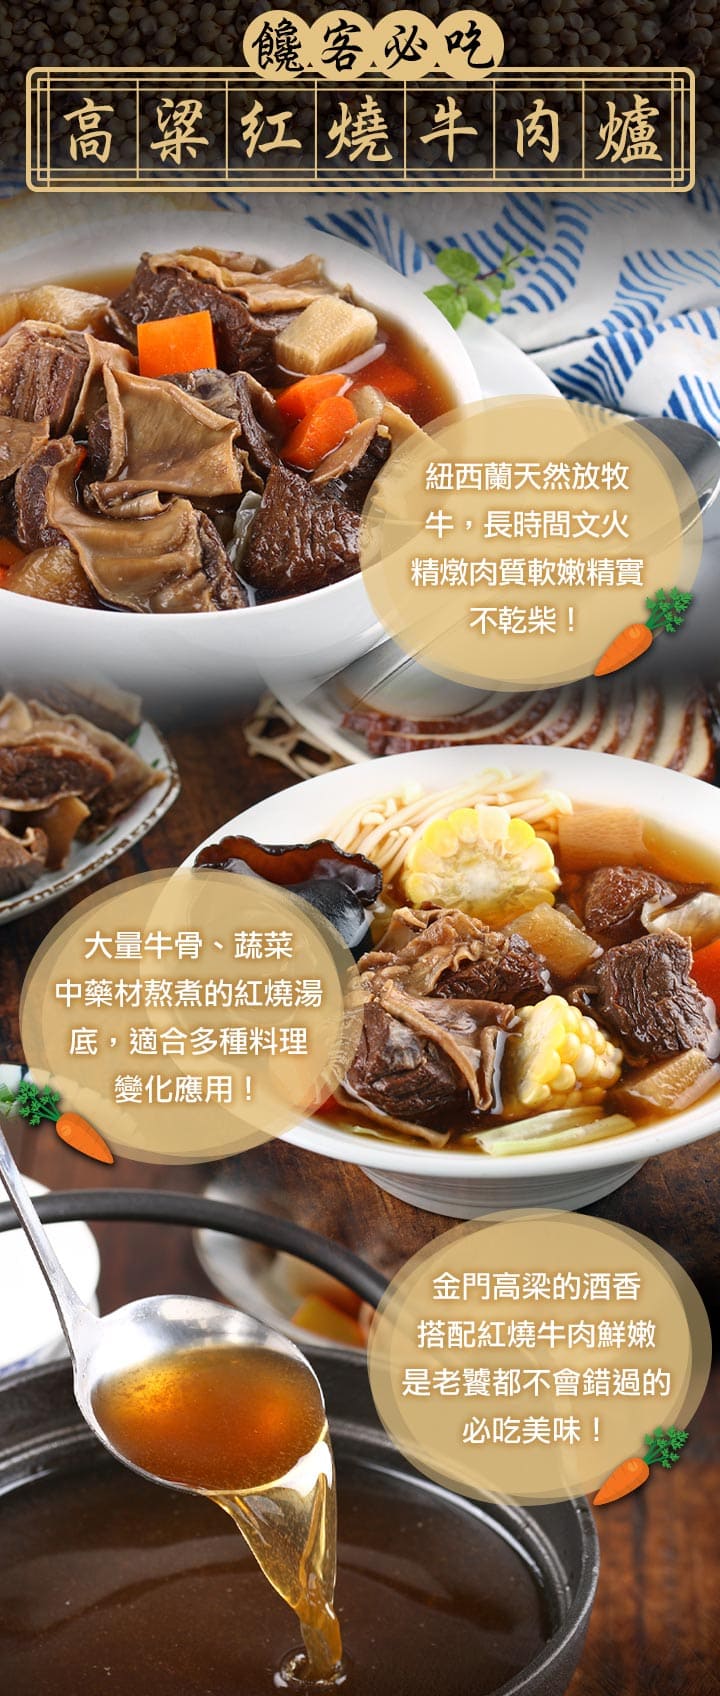       【愛上美味】金門高梁紅燒牛肉爐8包(1000g/包±10%/固型物